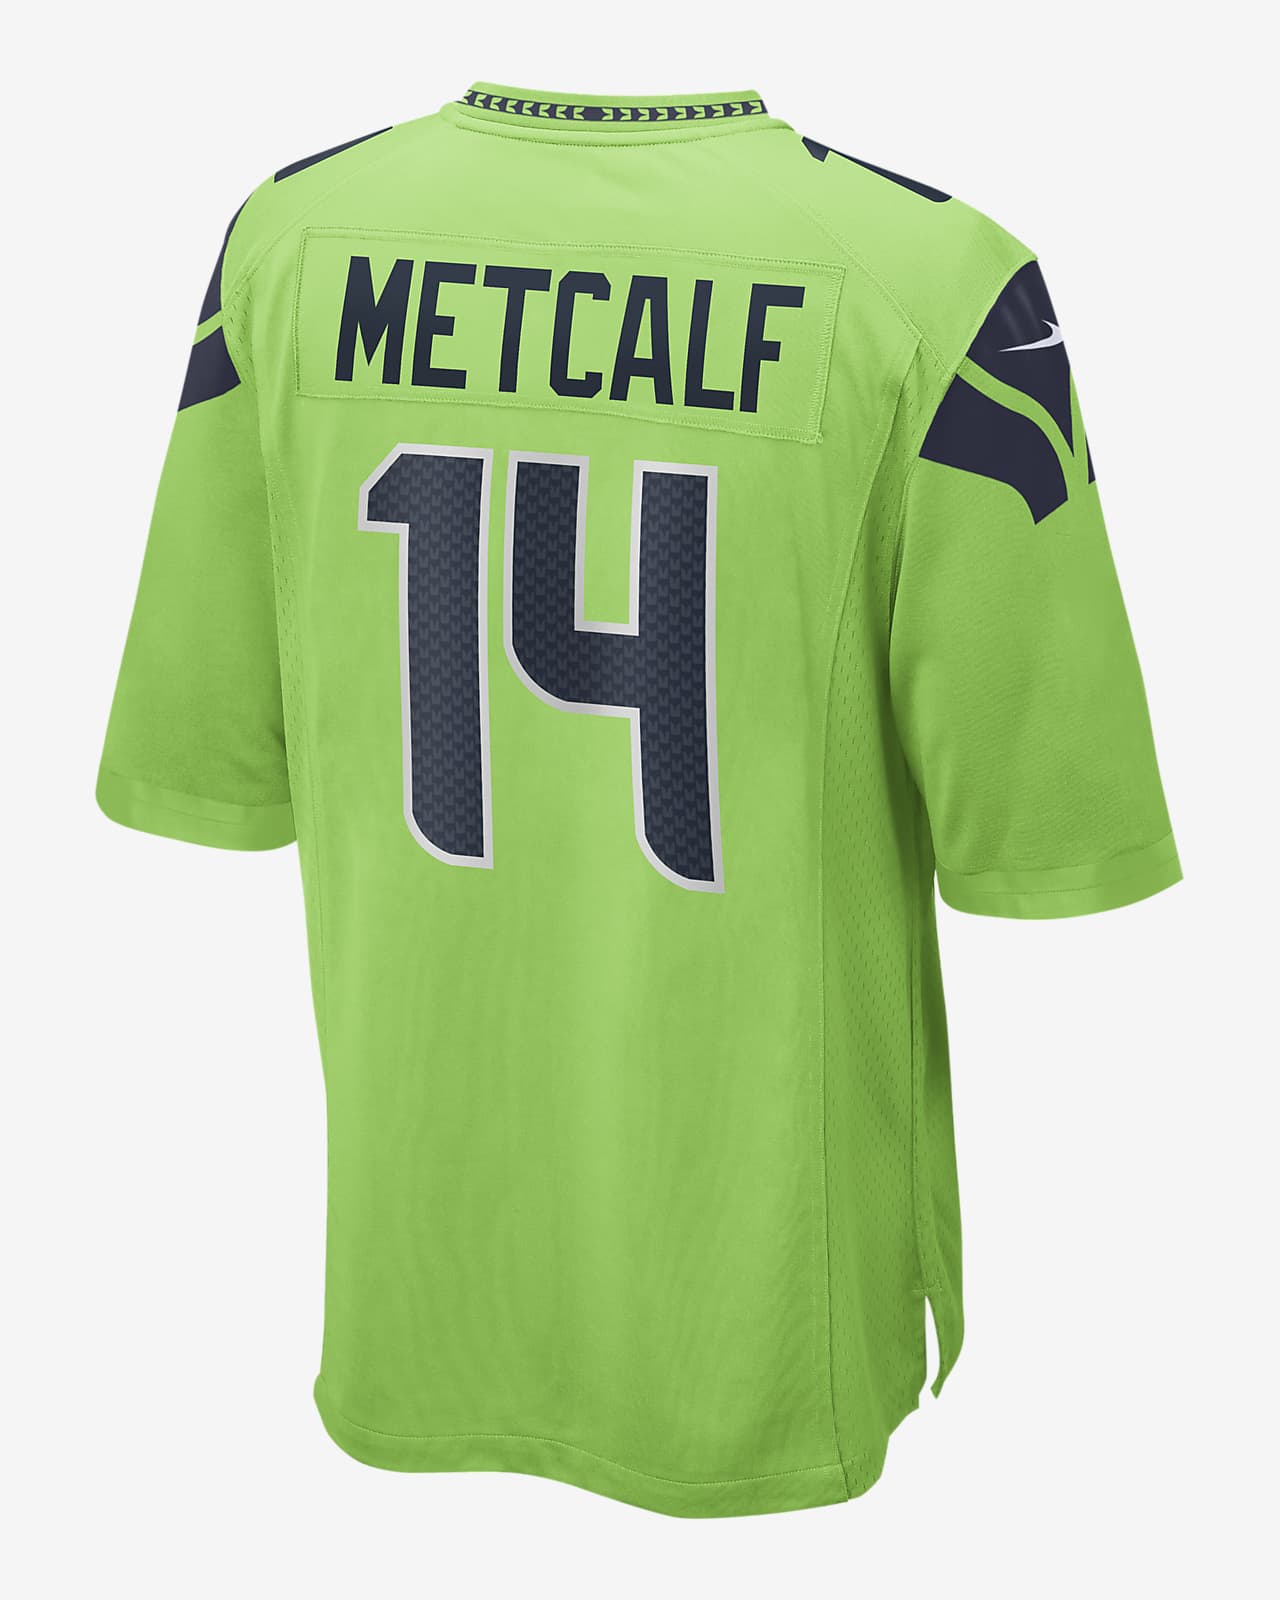 خيوط النسيج NFL Seattle Seahawks (DK Metcalf) Men's Game Football Jersey خيوط النسيج